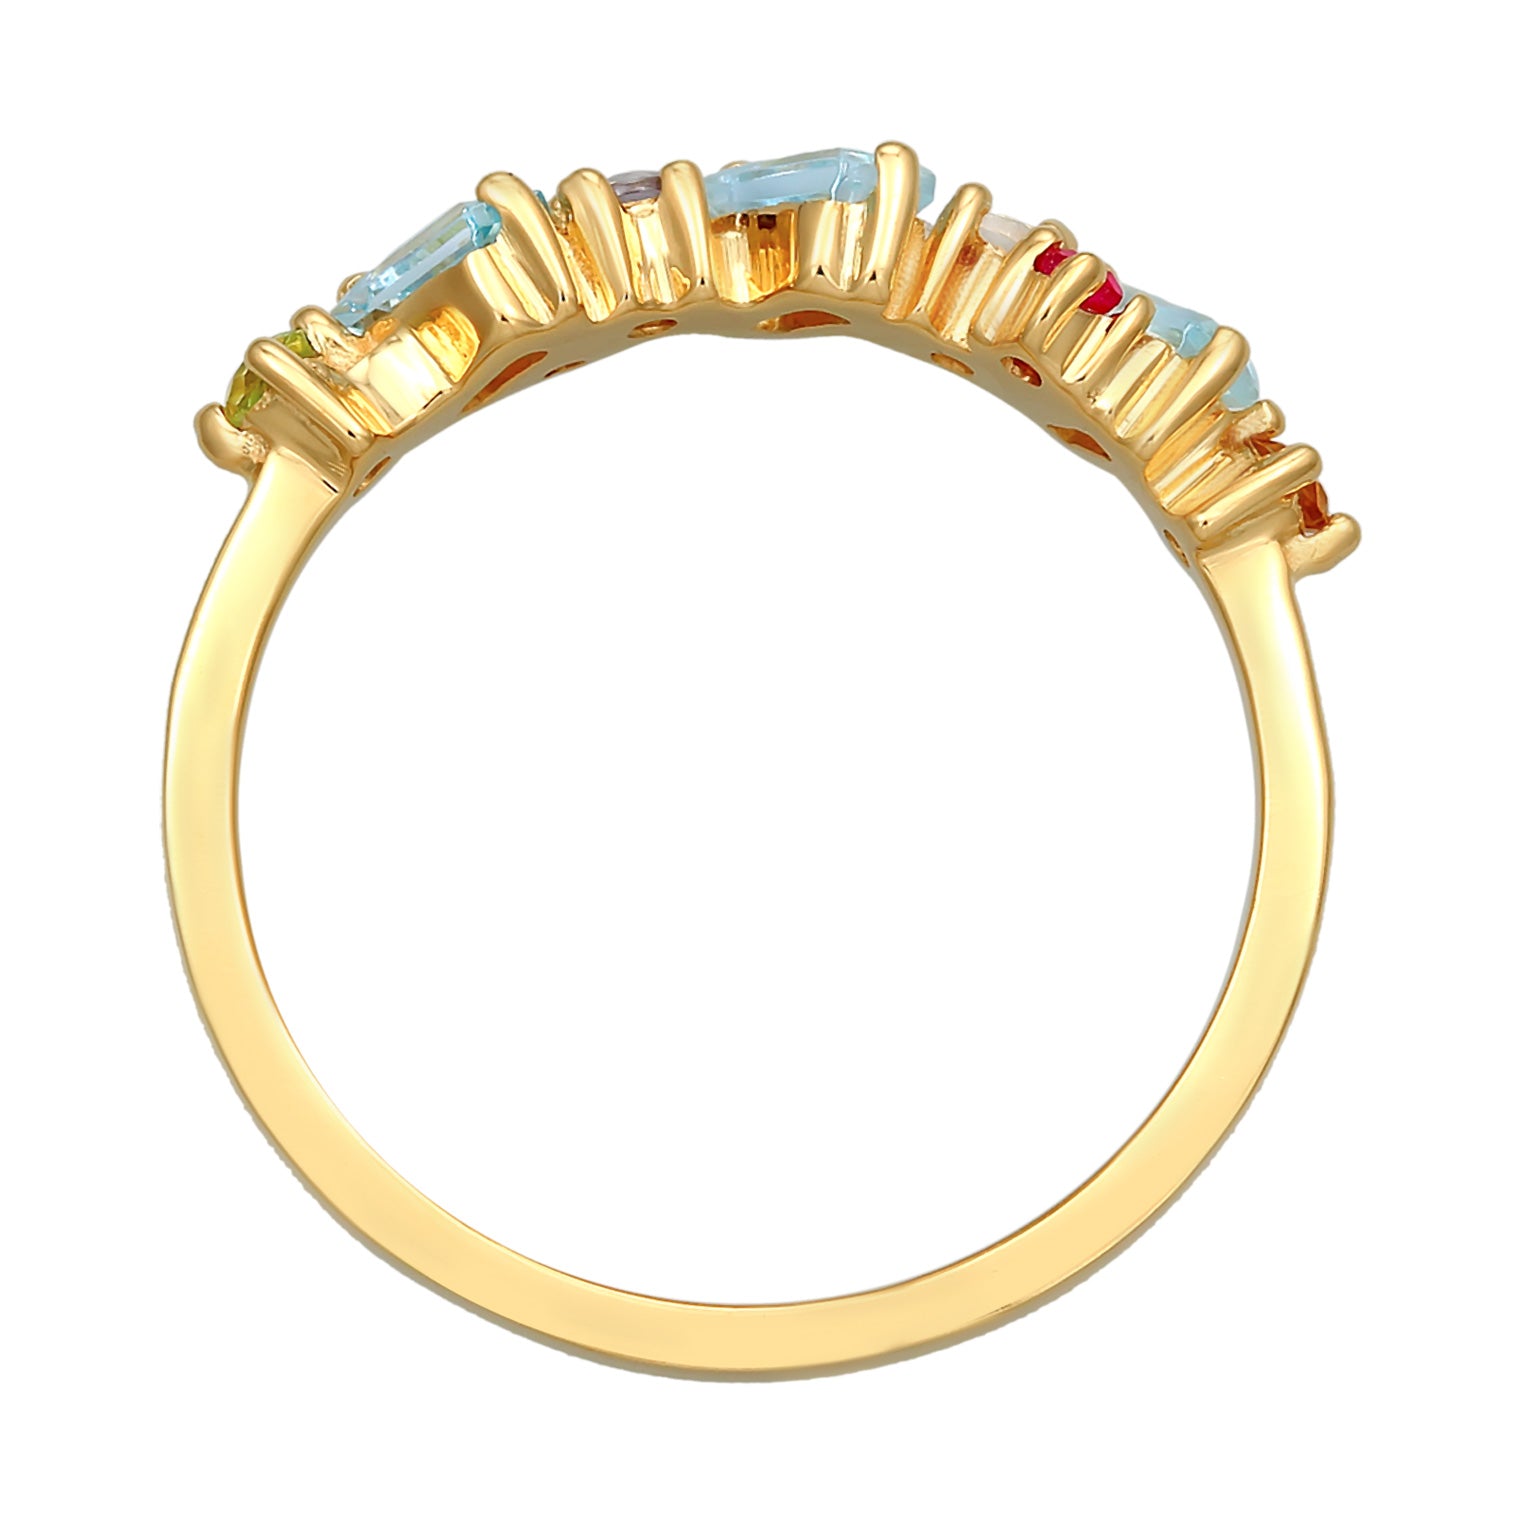 Massiver Odenwald Ring Rundschliff Saphire bunt rundum Gold